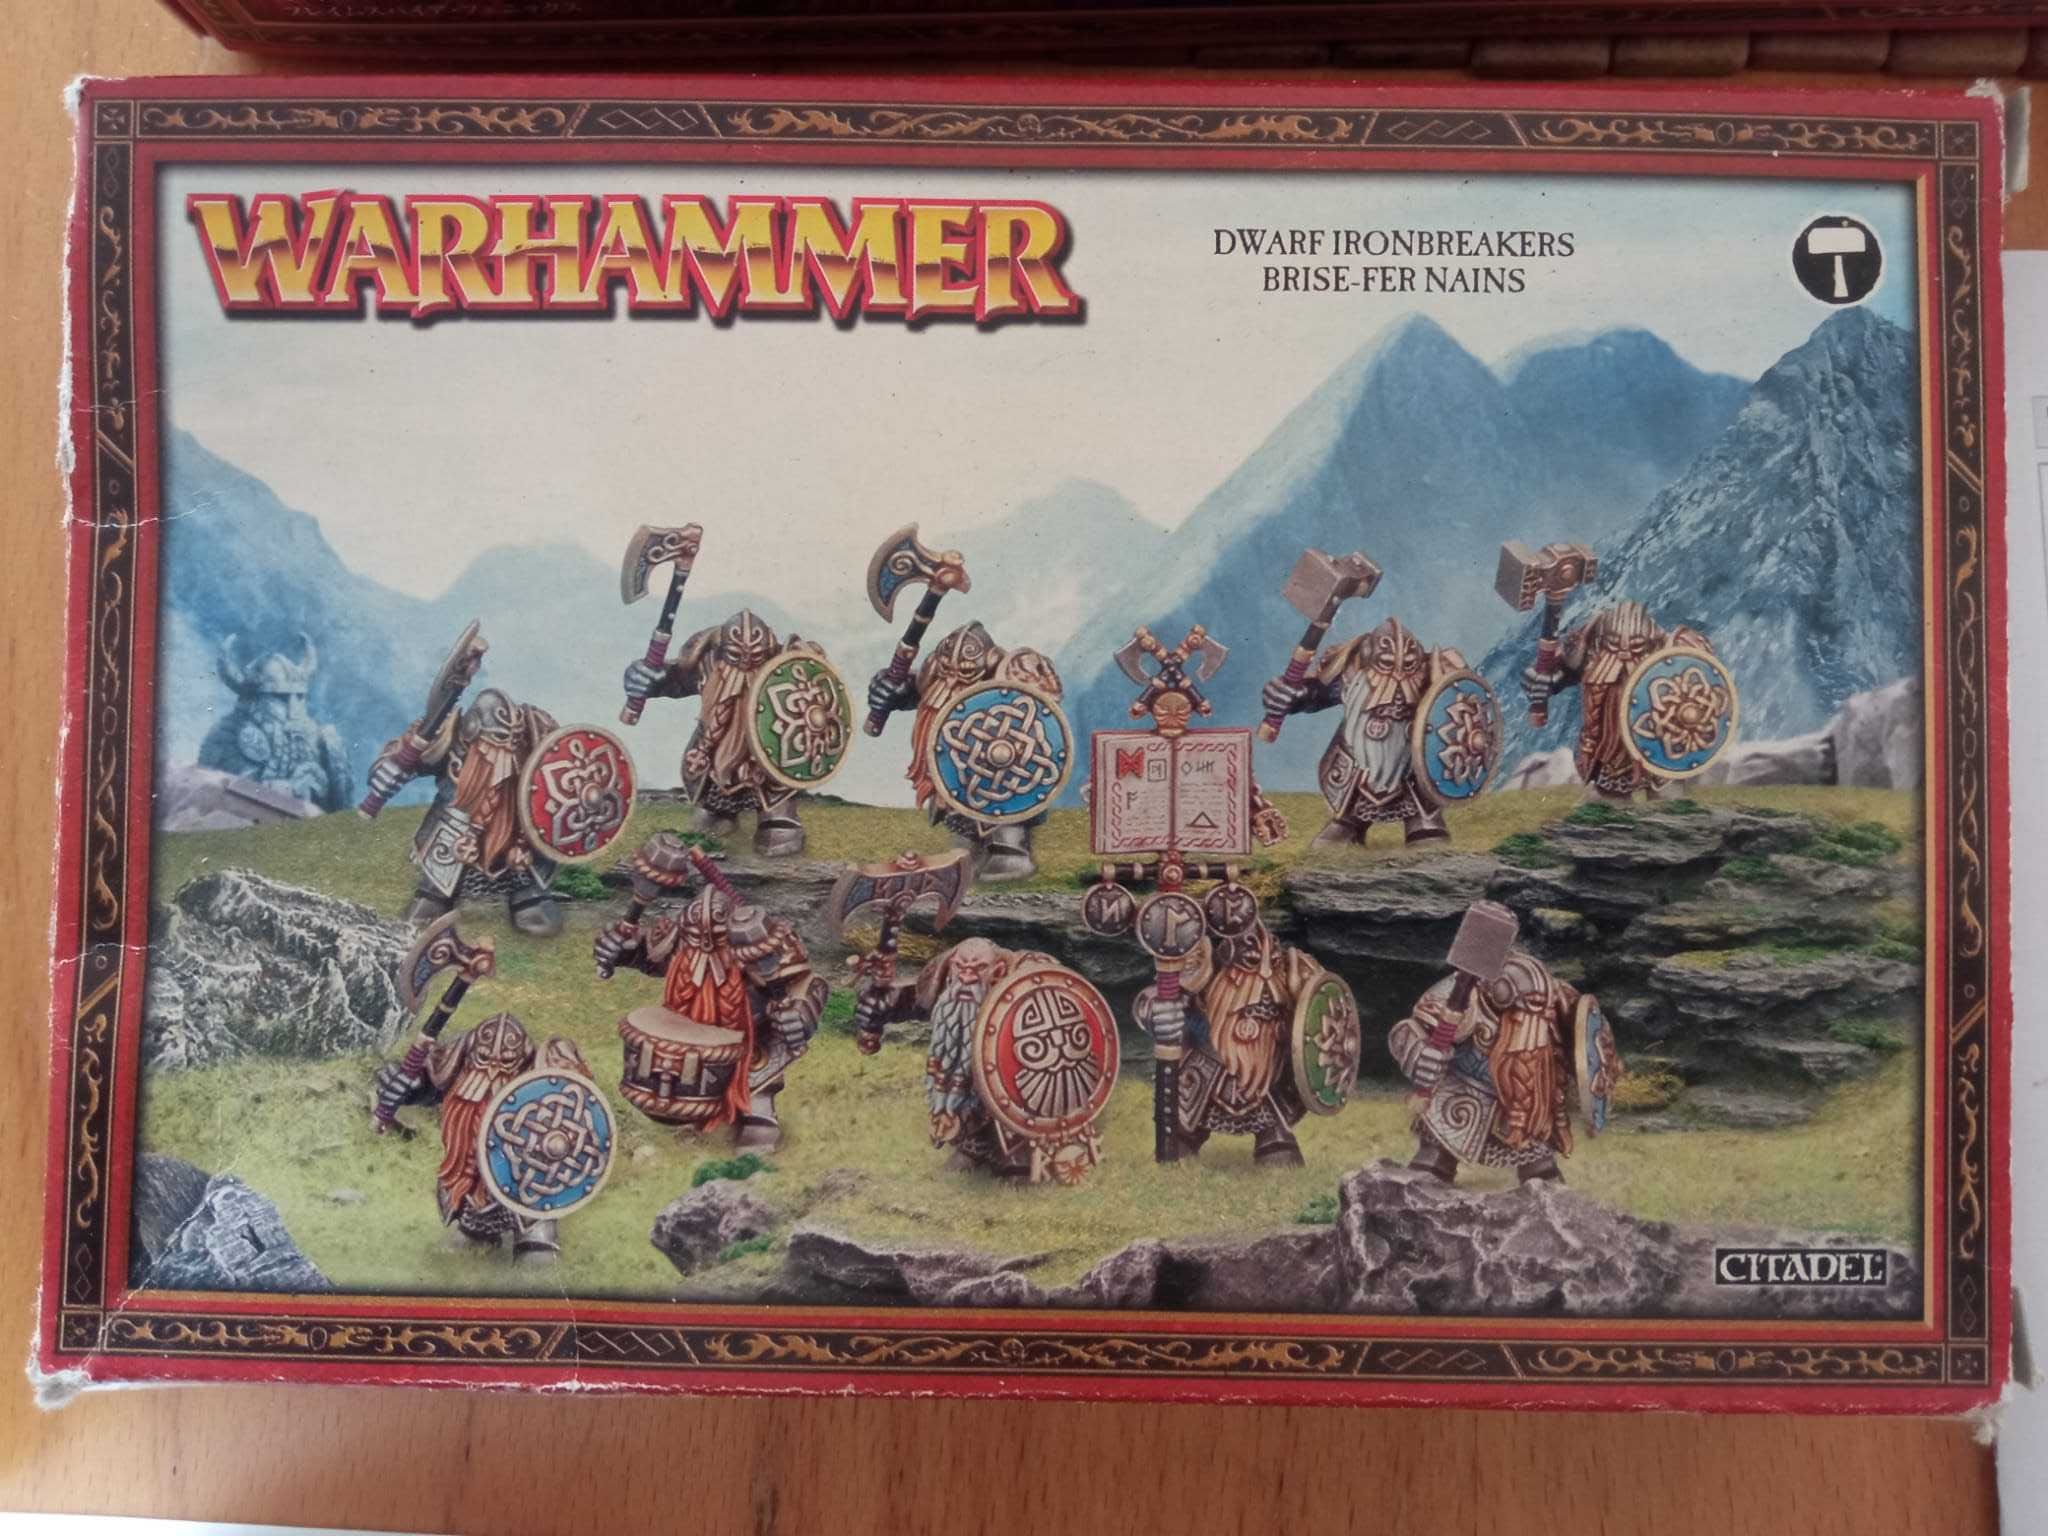 Warhammer: Dwarf Ironbreakers 2013